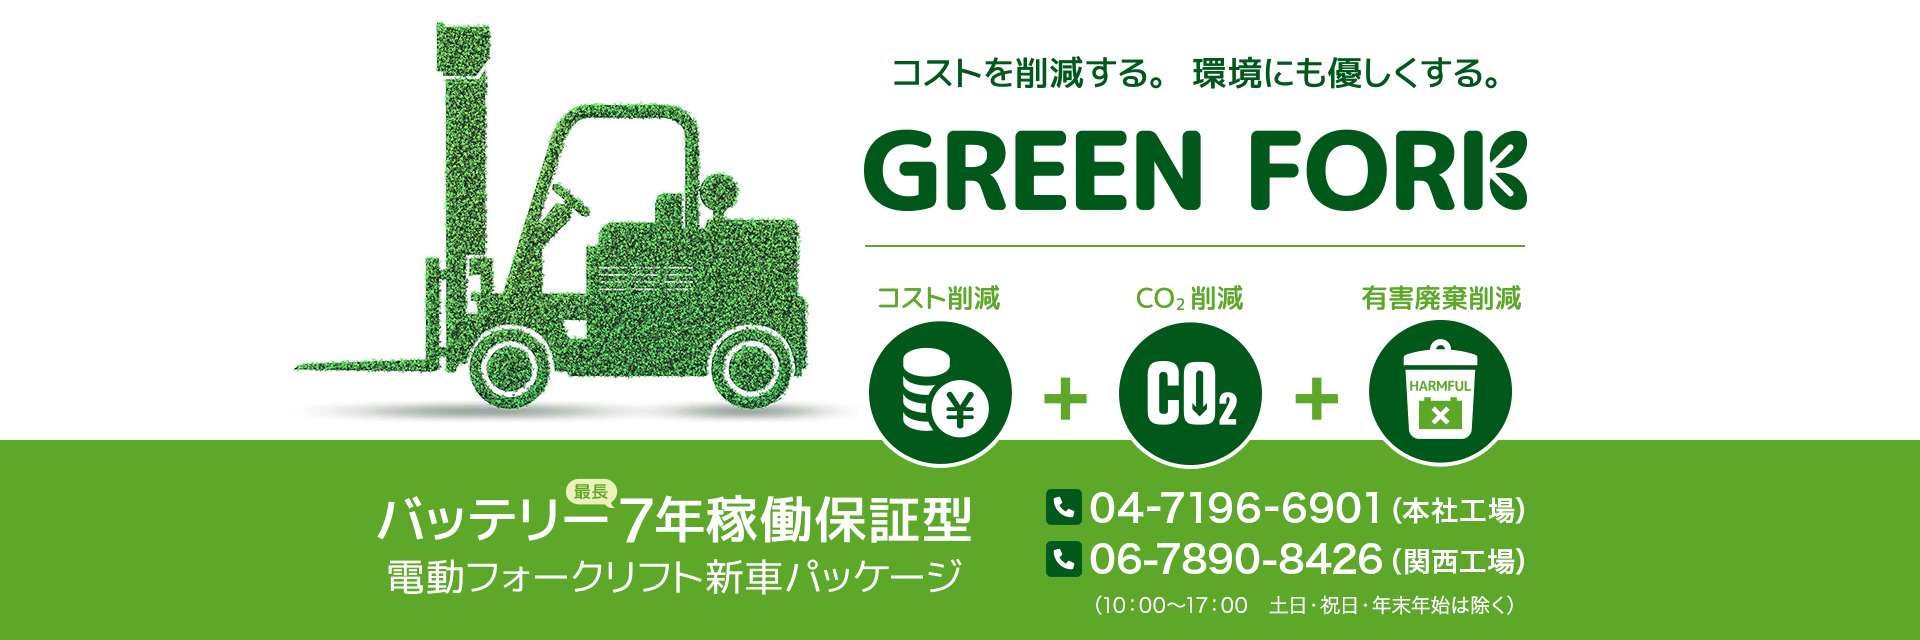 コストを削減する。環境にも優しくする。『GREEN FORK』 コスト削減、CO2削減、有害廃棄削減